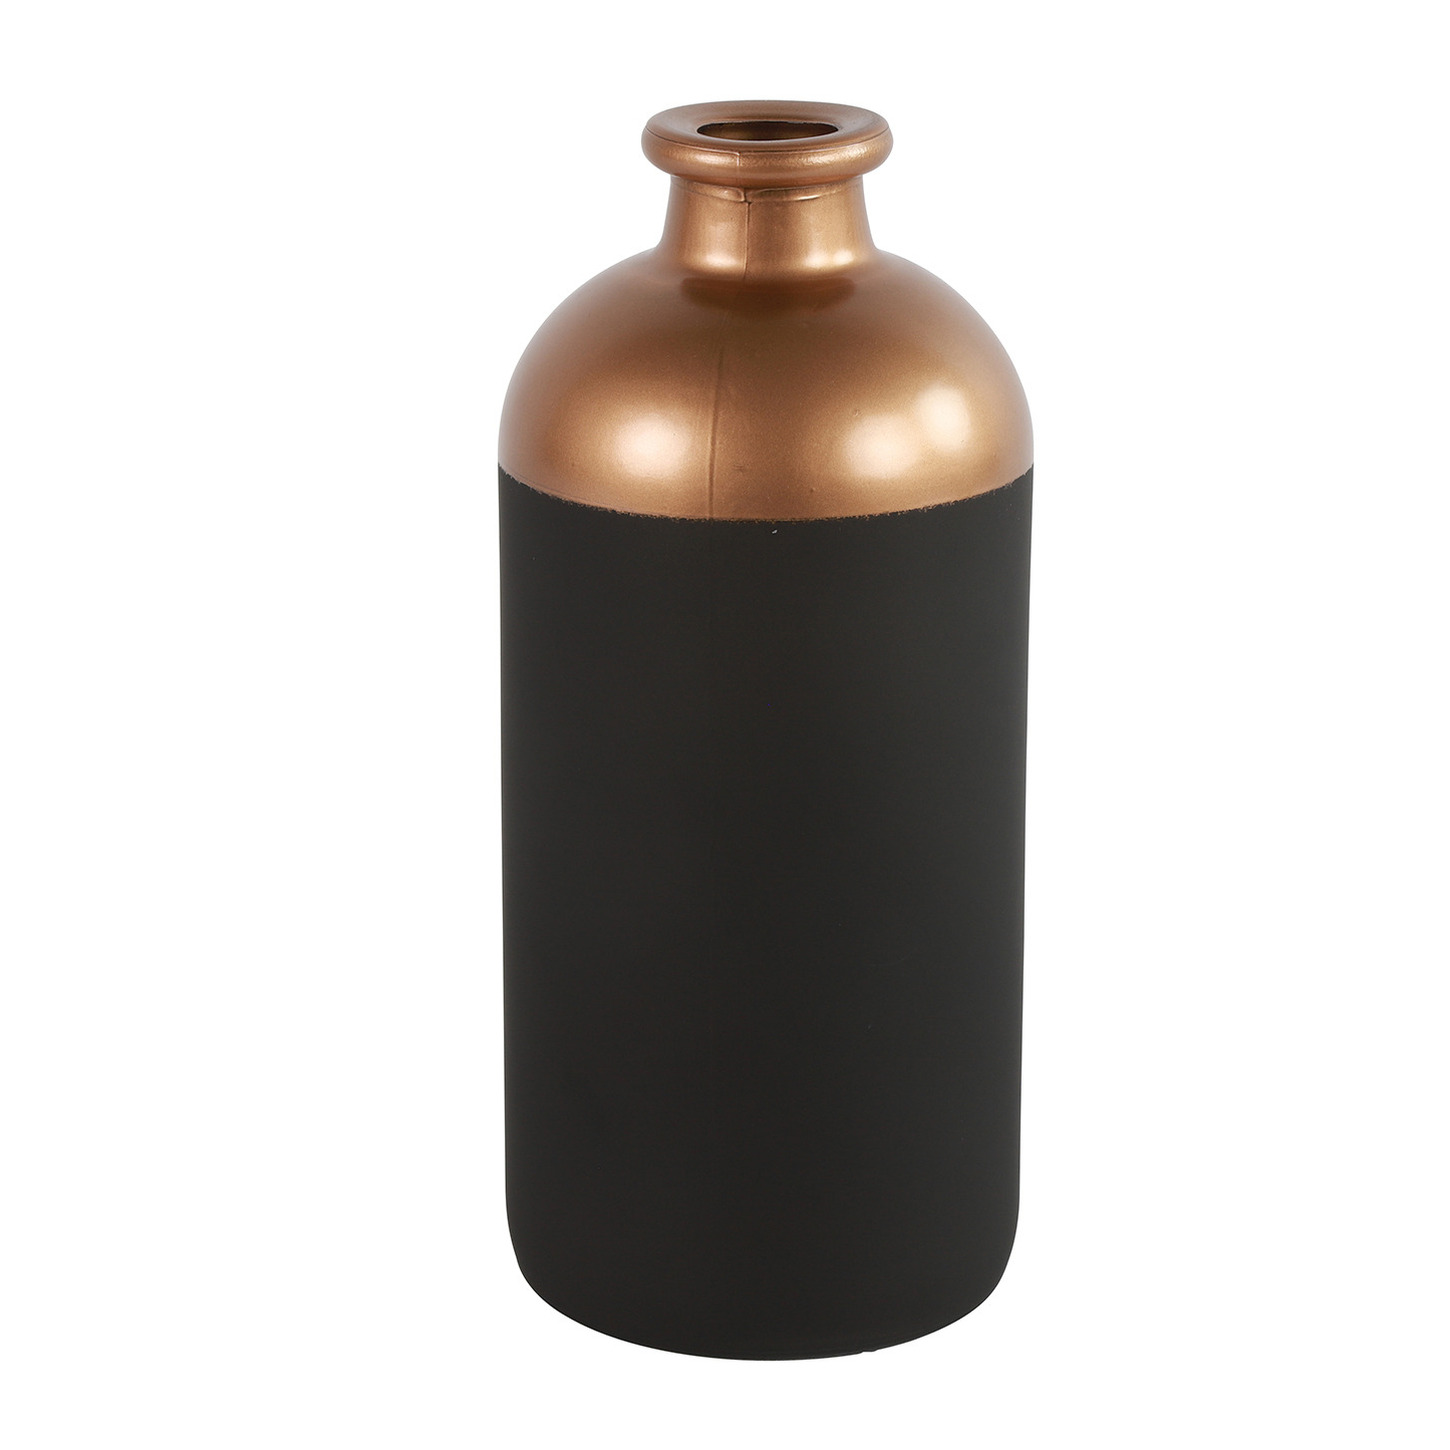 Countryfield Bloemen of deco vaas - zwart/koper - glas - luxe fles vorm - D11 x H25 cm -